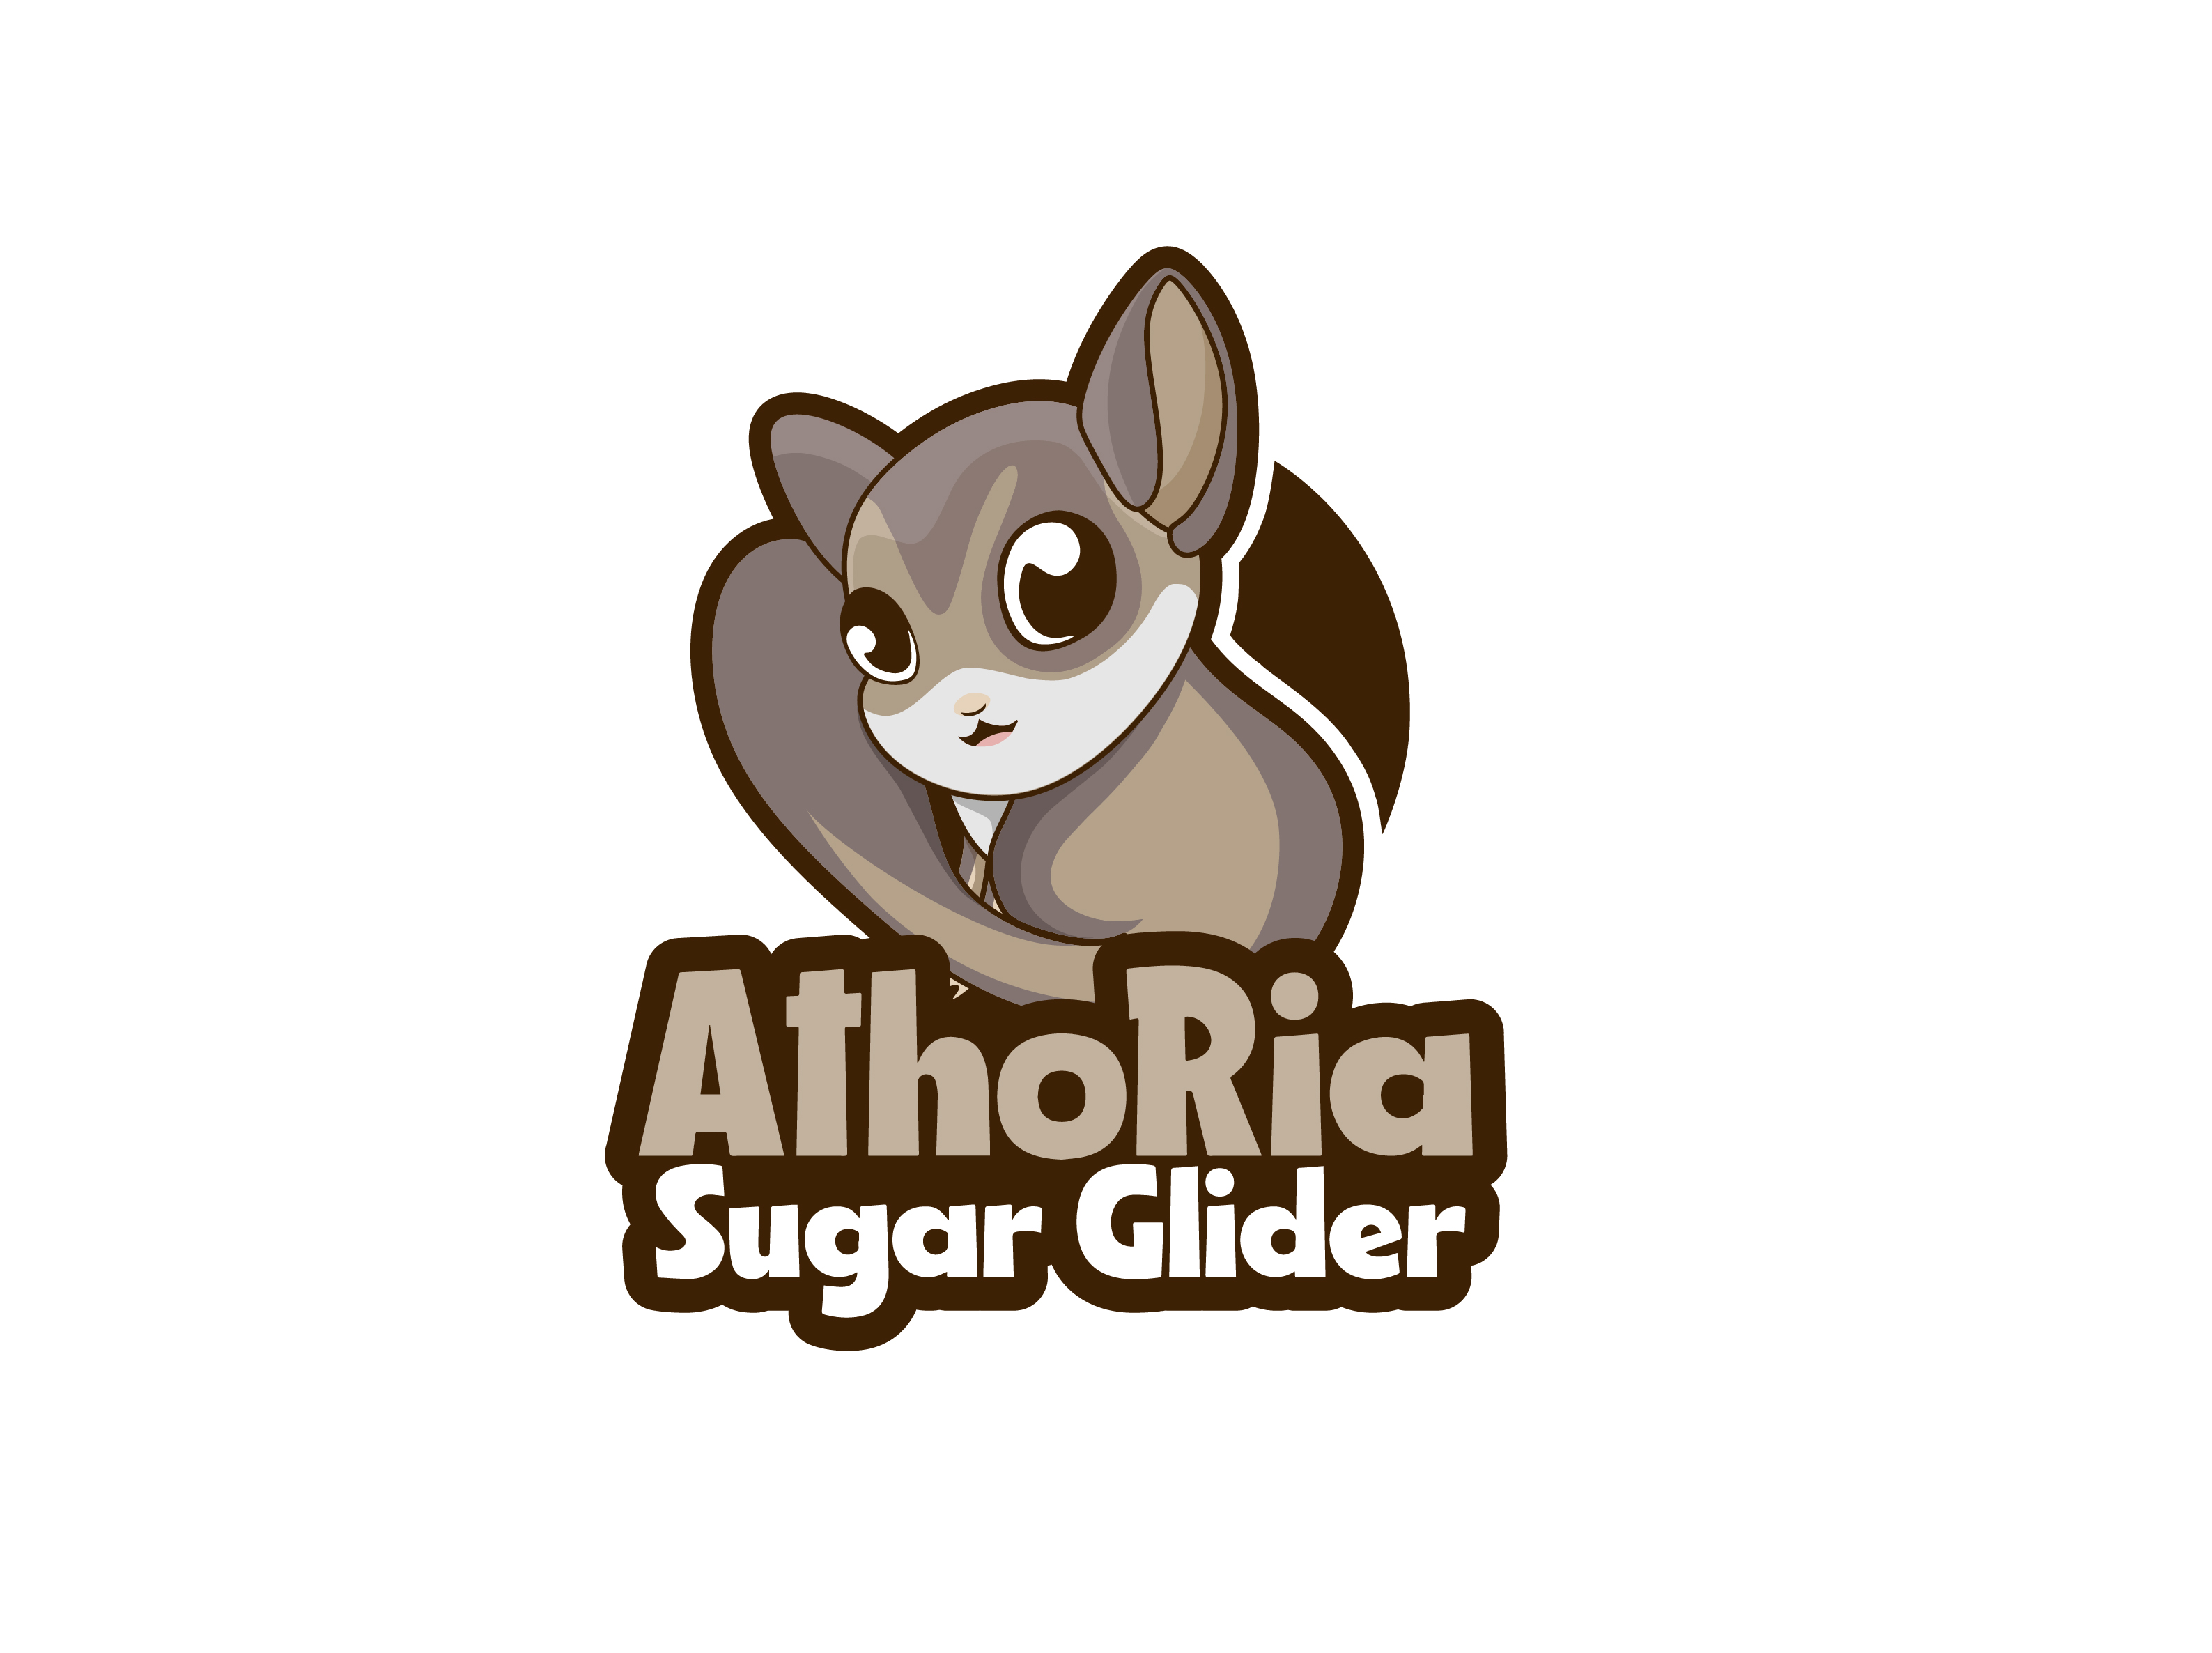 AthoRia Sugar Glider